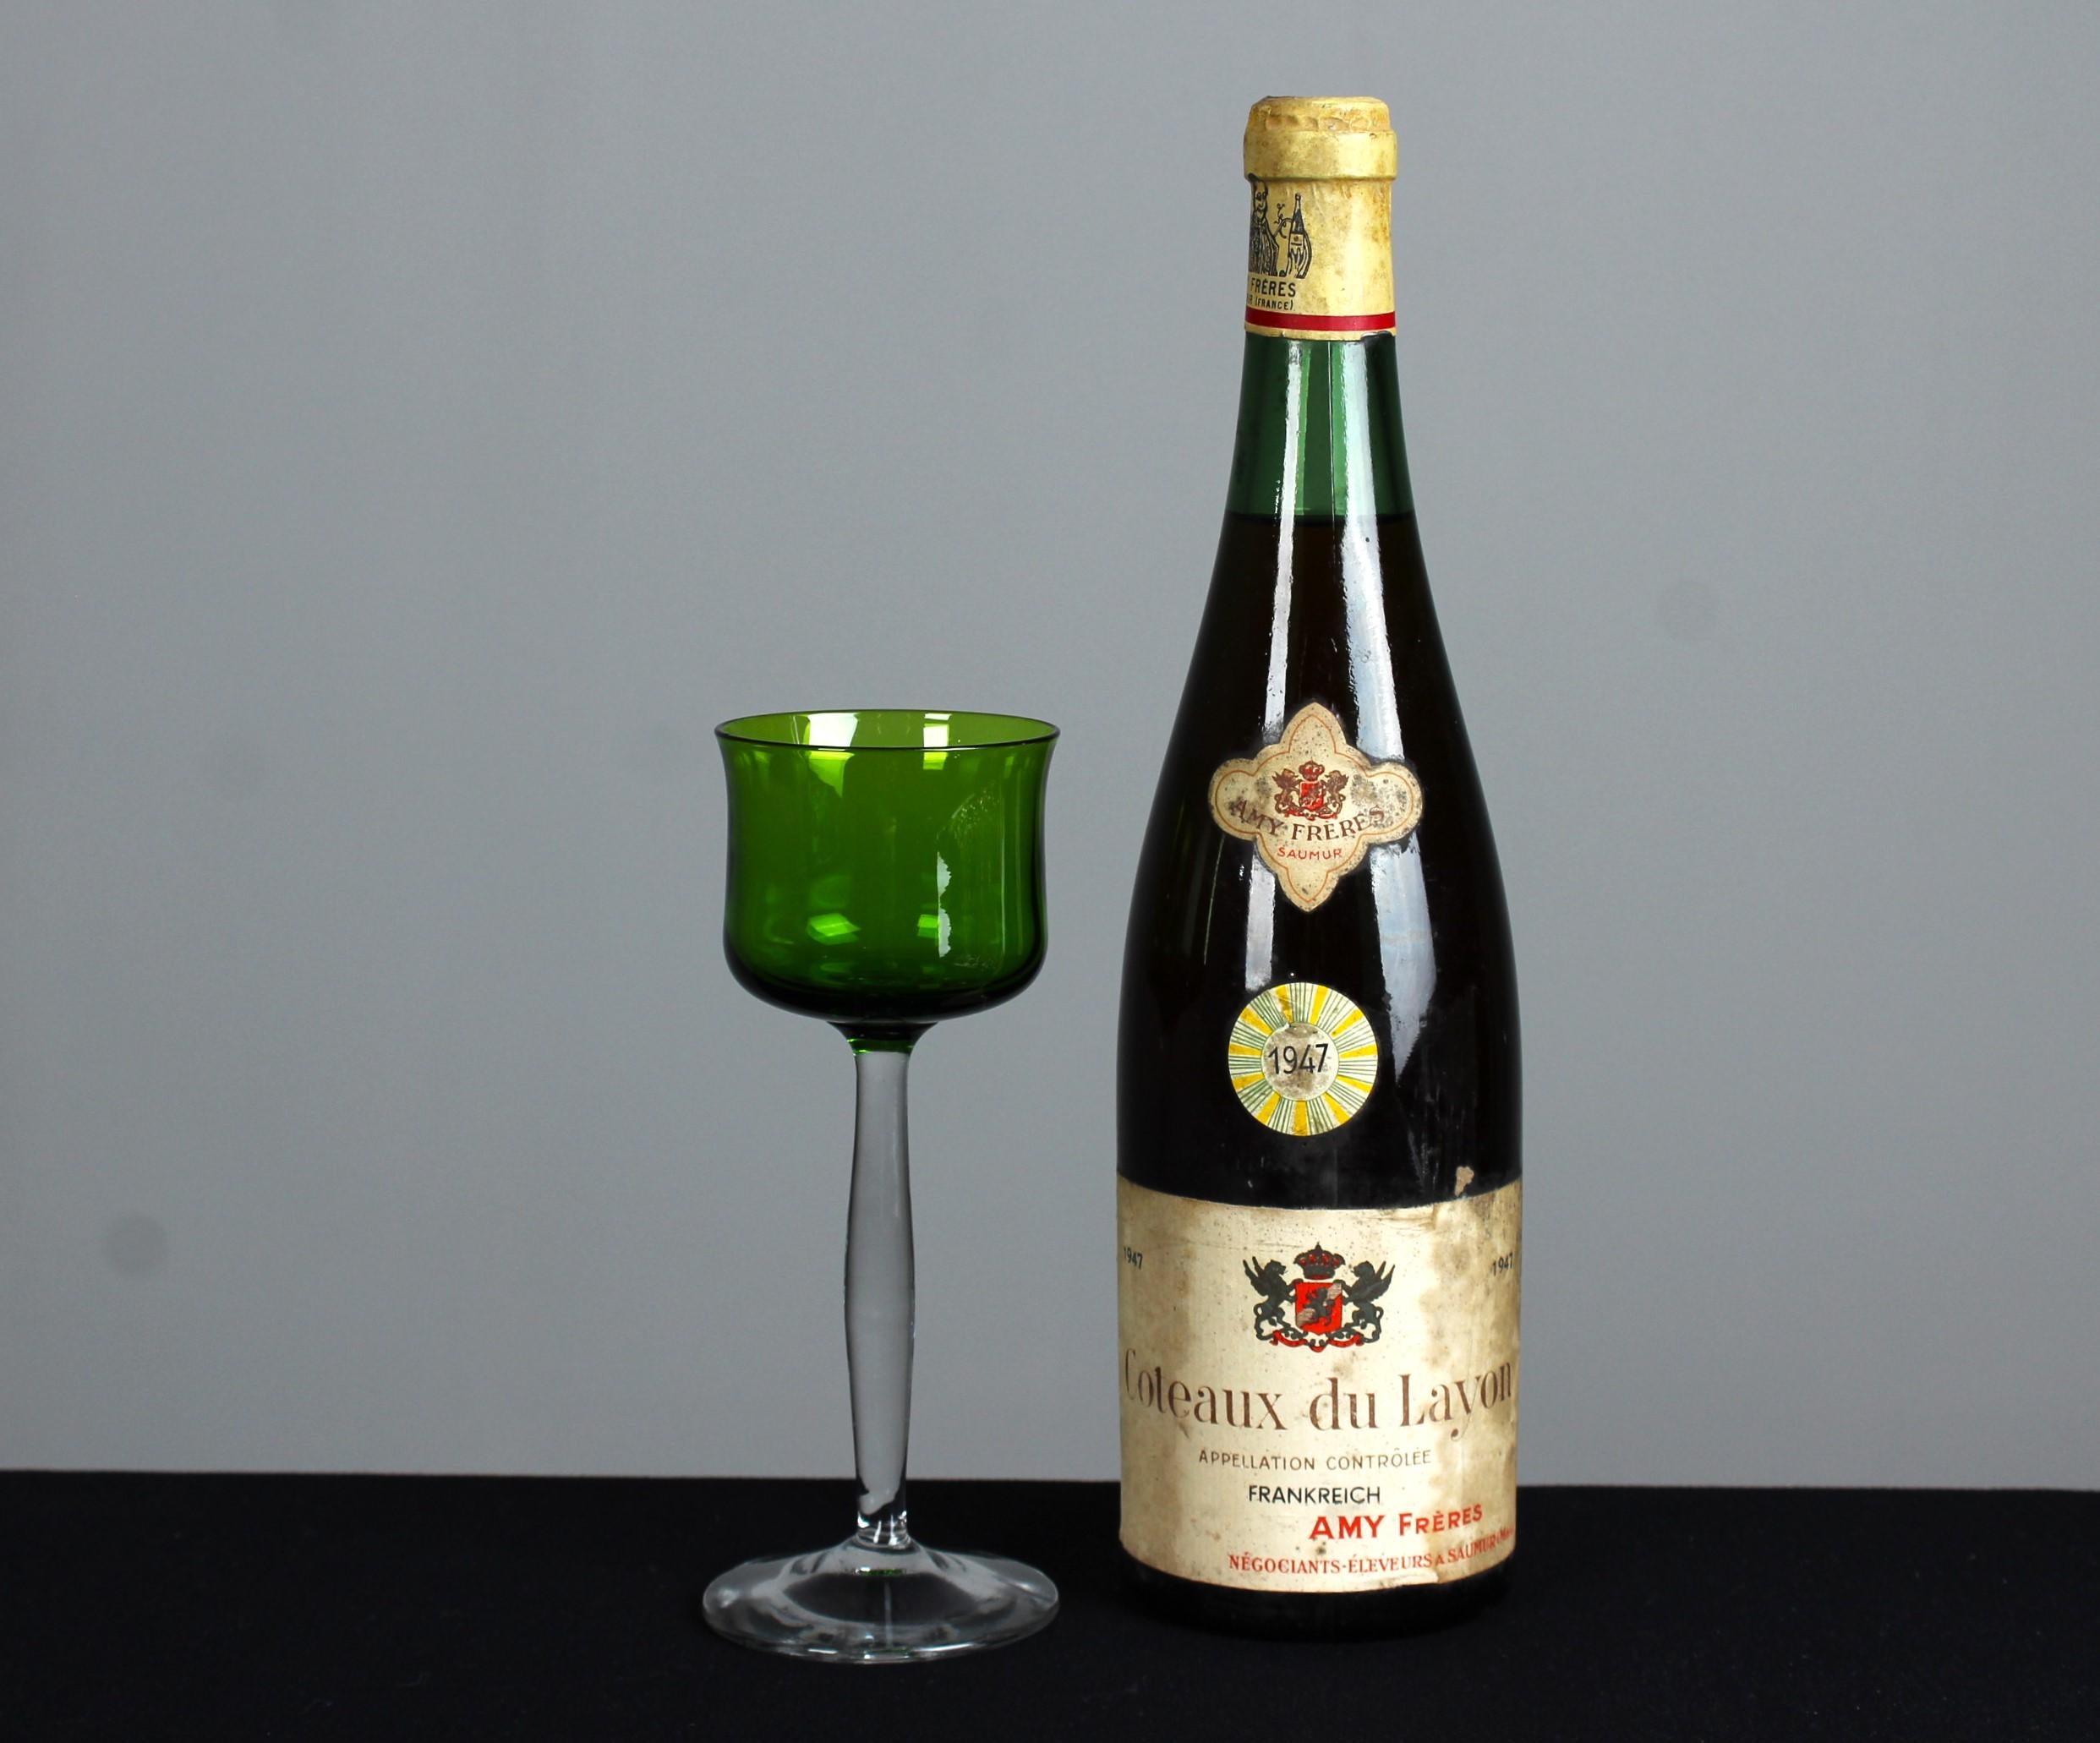 Un magnifique verre à vin antique de couleur verte.

Au tournant du XXe siècle, la culture française de la gastronomie et de la convivialité s'est épanouie, entraînant l'émergence d'un symbole de la culture épicurienne française : le verre à